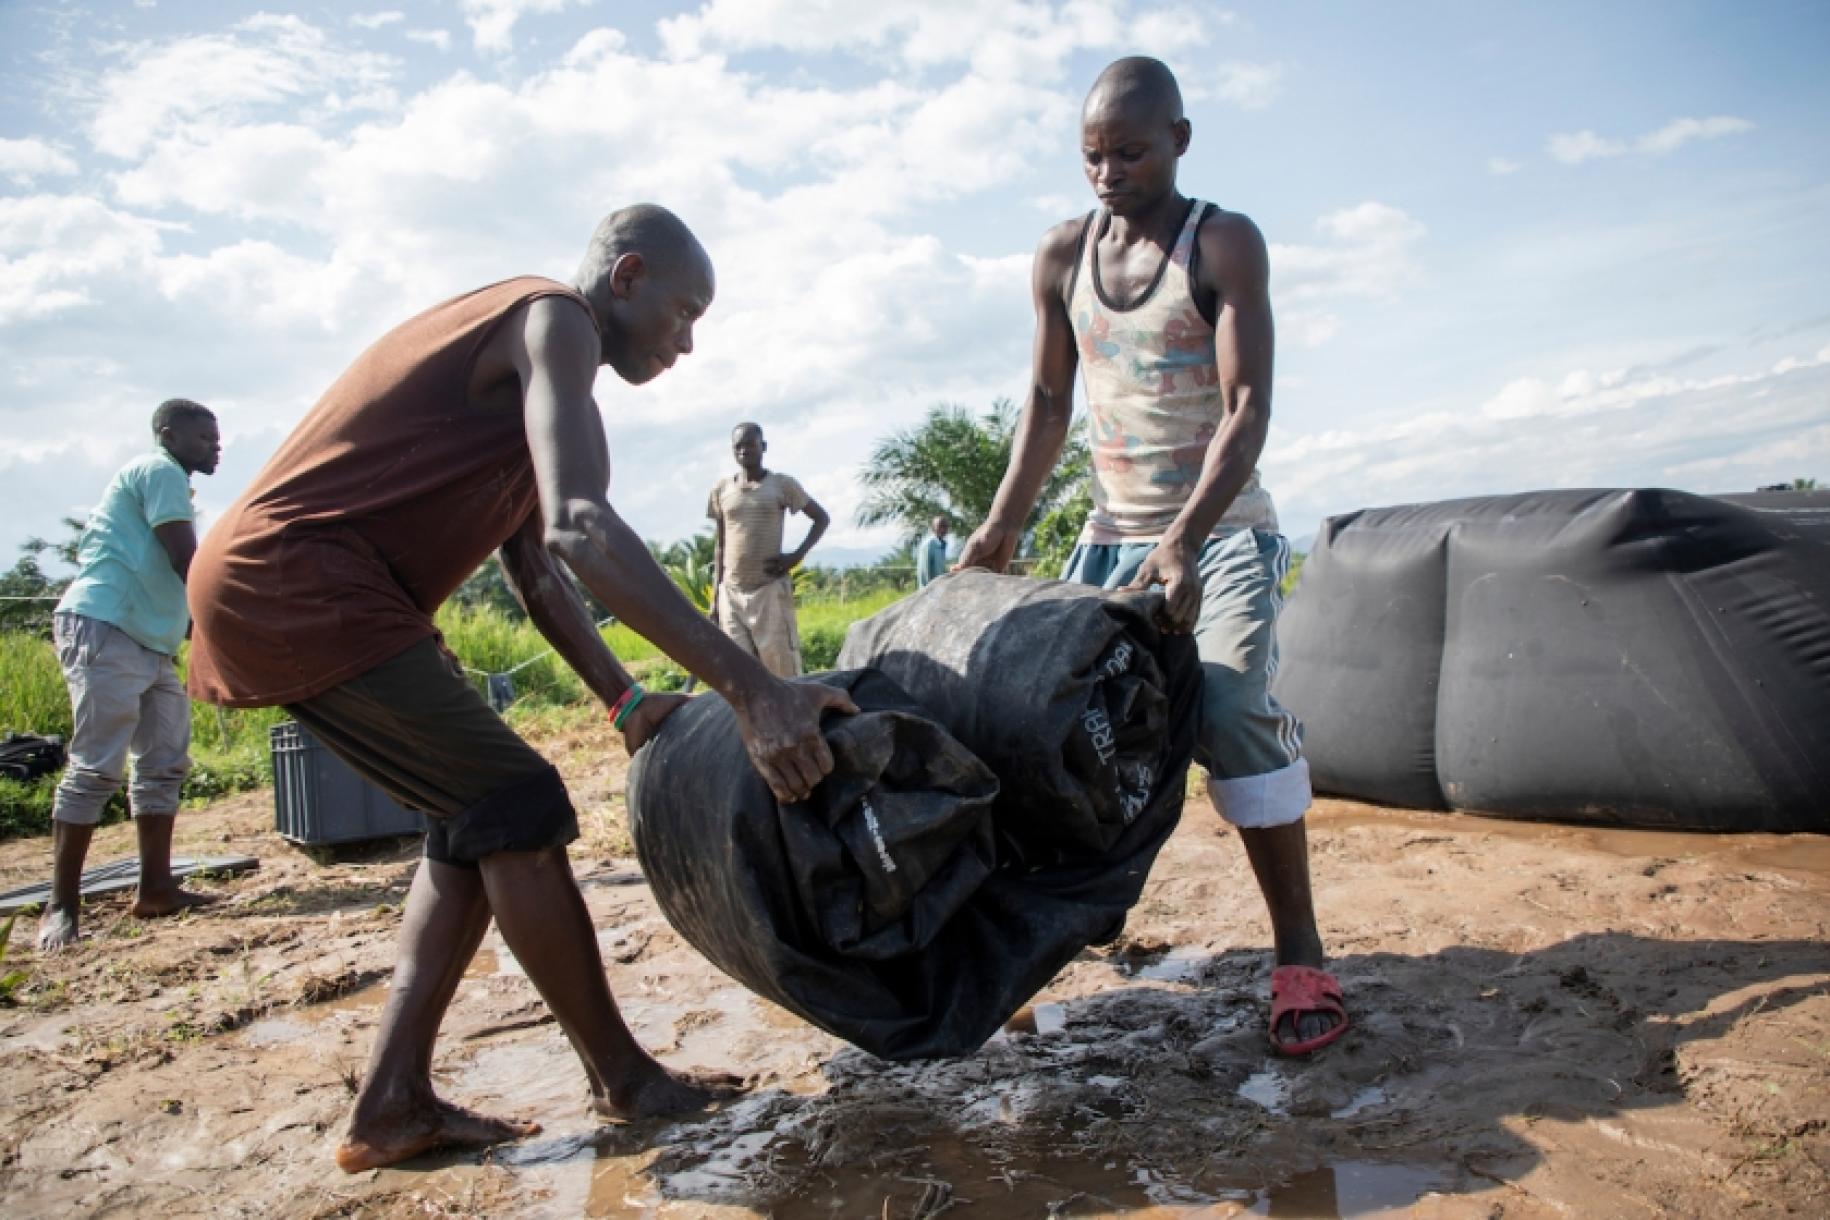 En Burundi, en un día soleado, dos hombres jóvenes levantan una gran lona negra enrollada en medio de un terreno fangoso, mientras otros dos hombres permanecen cerca.